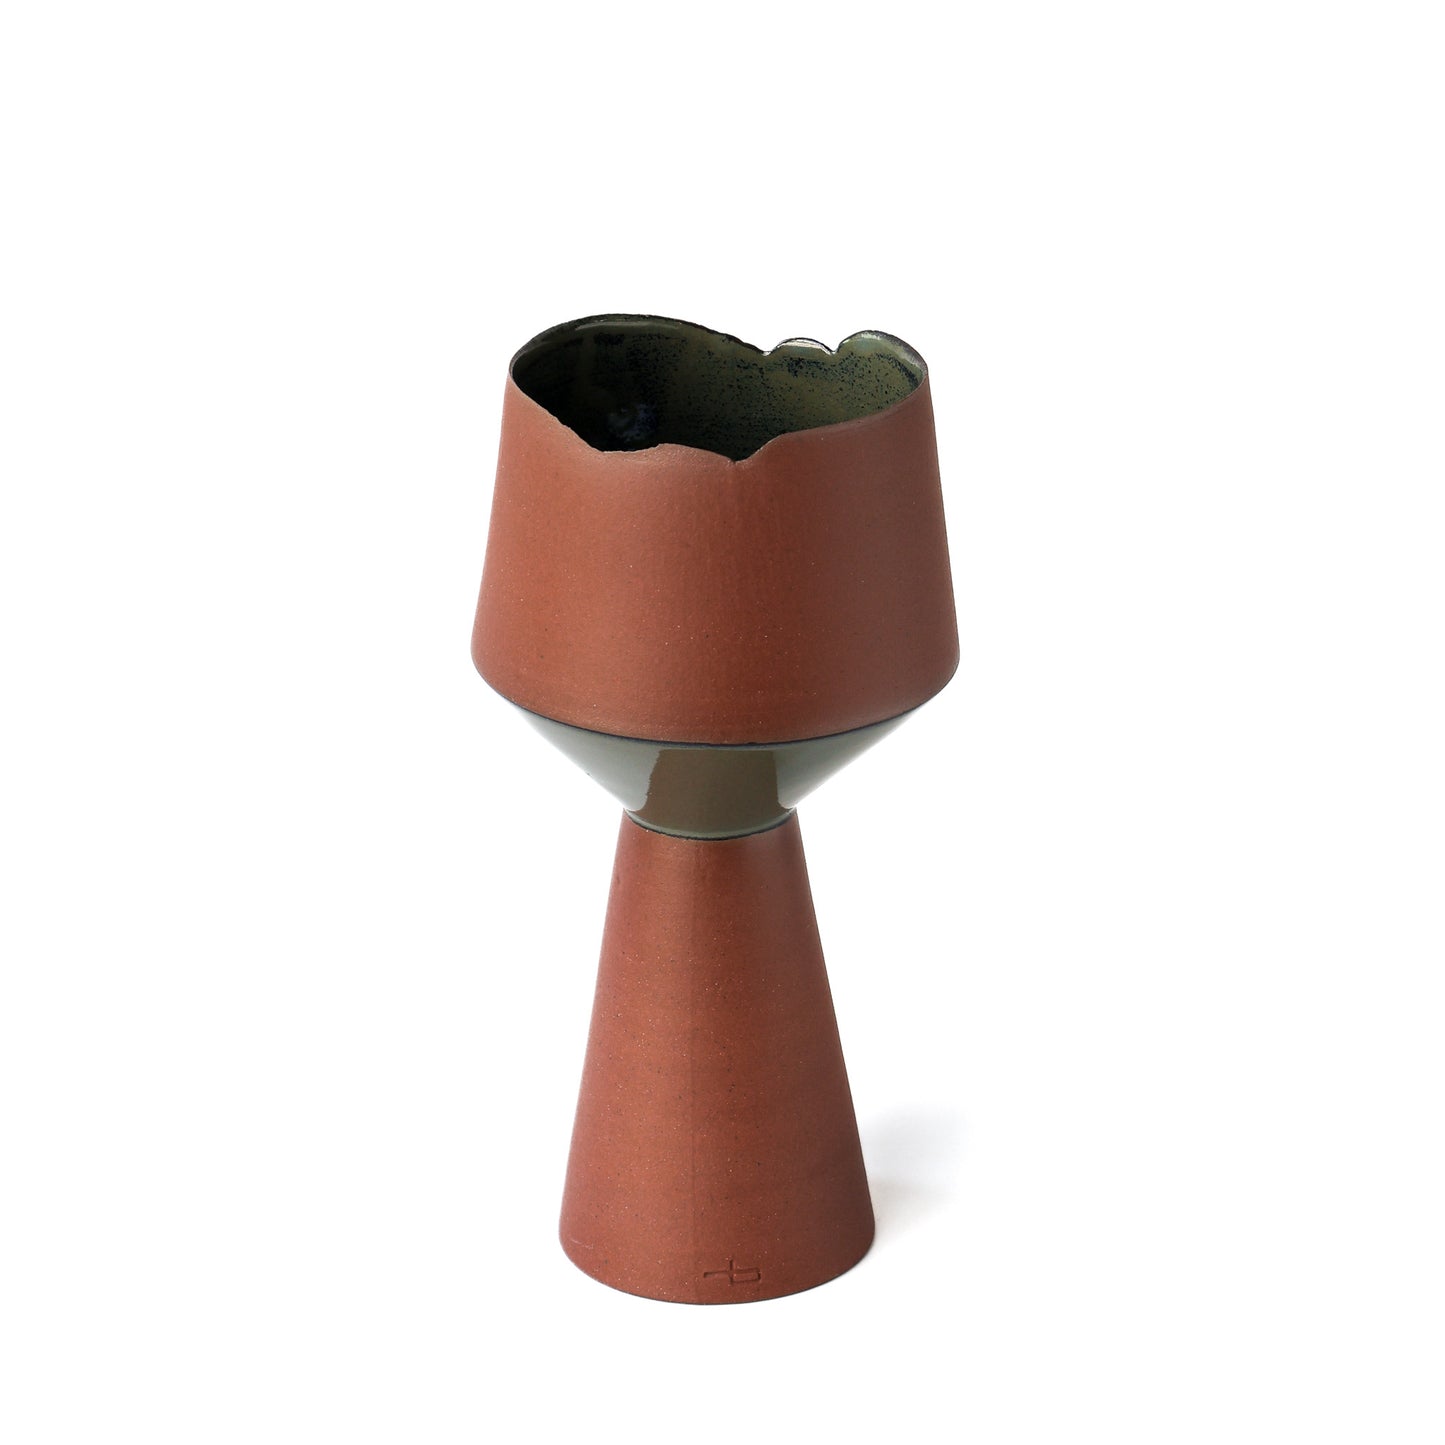 Flake-Rim Vase